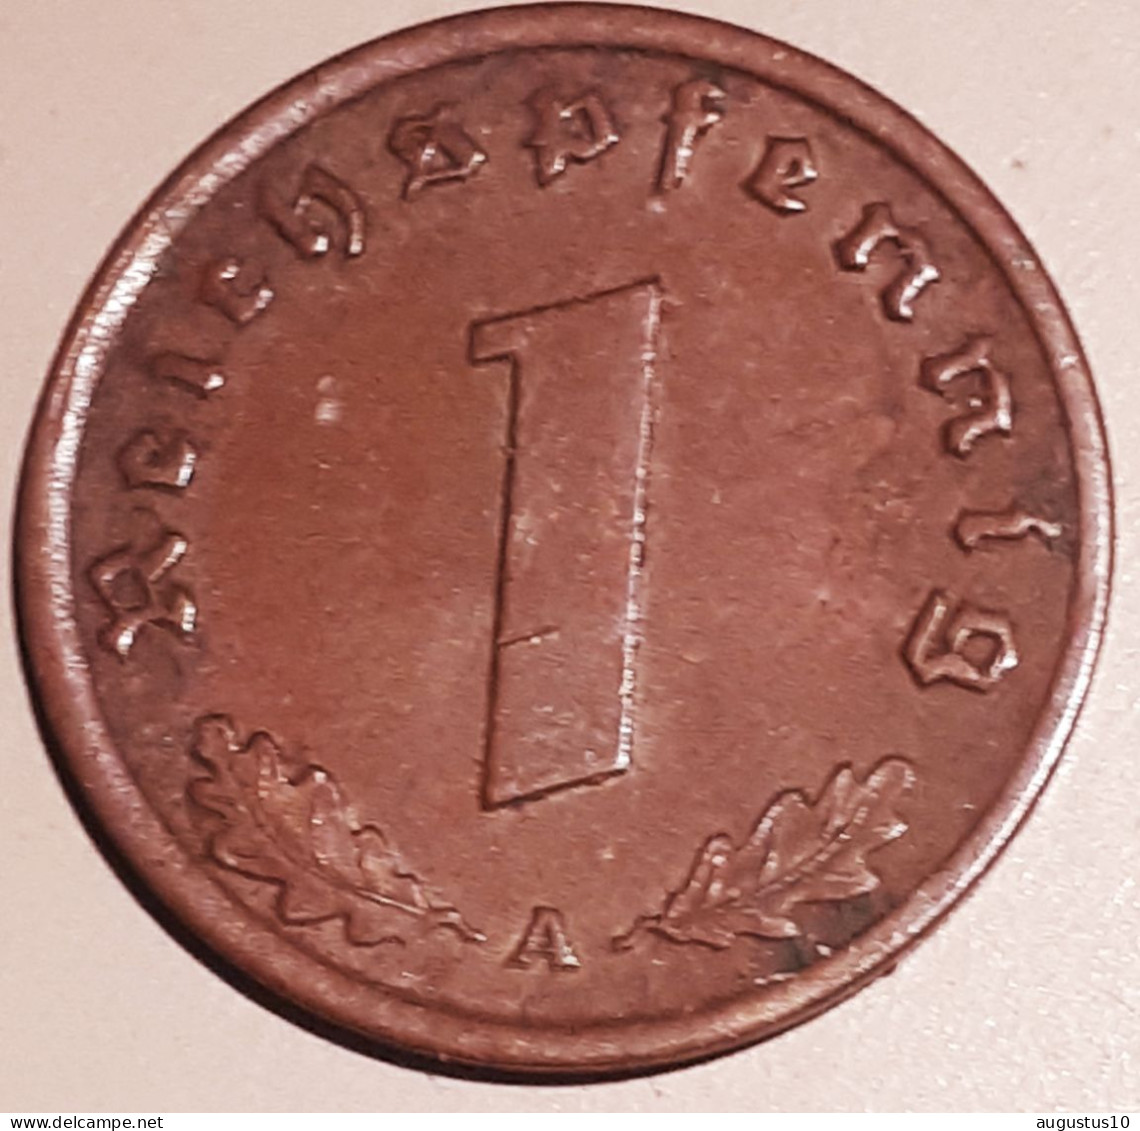 DUITSLAND.: 1 REICHSPFENNIG 1939 A XF KM 89 - 1 Reichspfennig